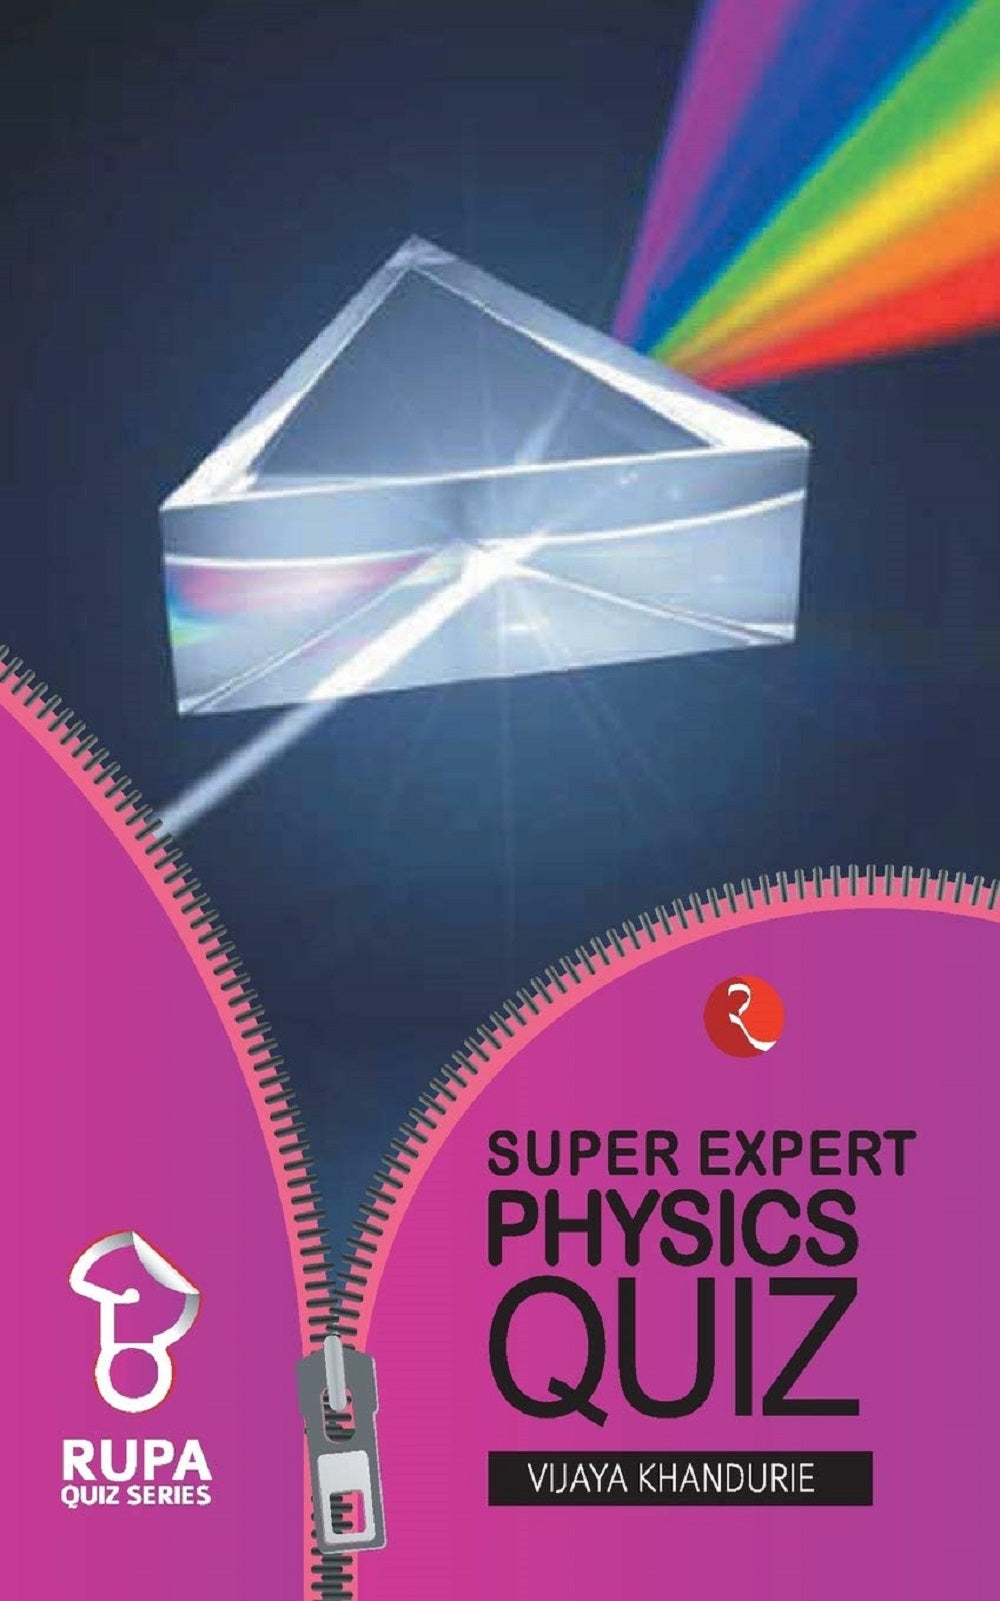 RUPA BOOK OF SUPER EXPERT PHYSICS QUIZ